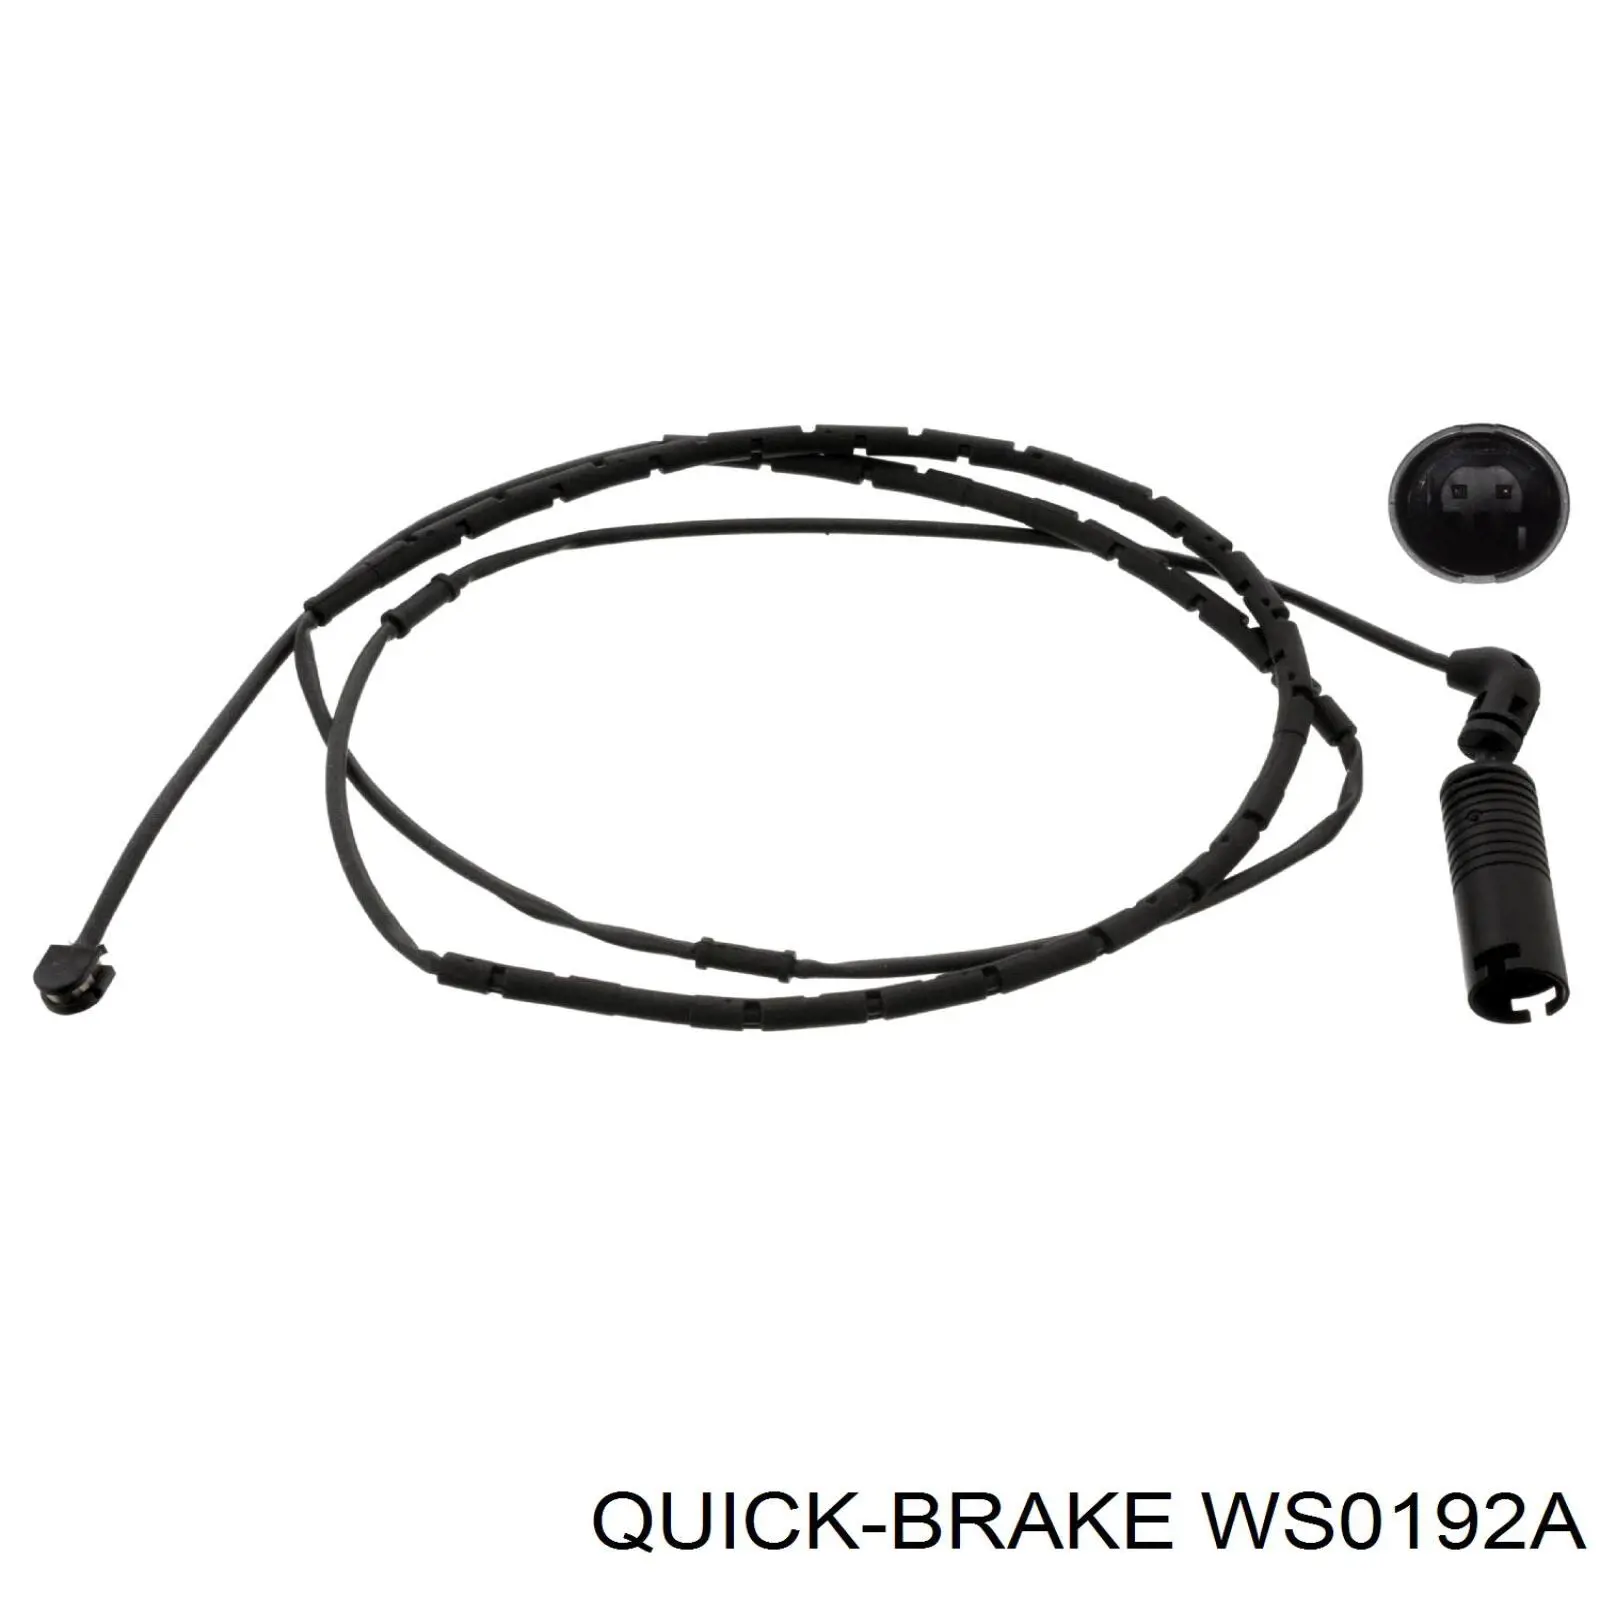 WS 0192 A Quick Brake contacto de aviso, desgaste de los frenos, trasero